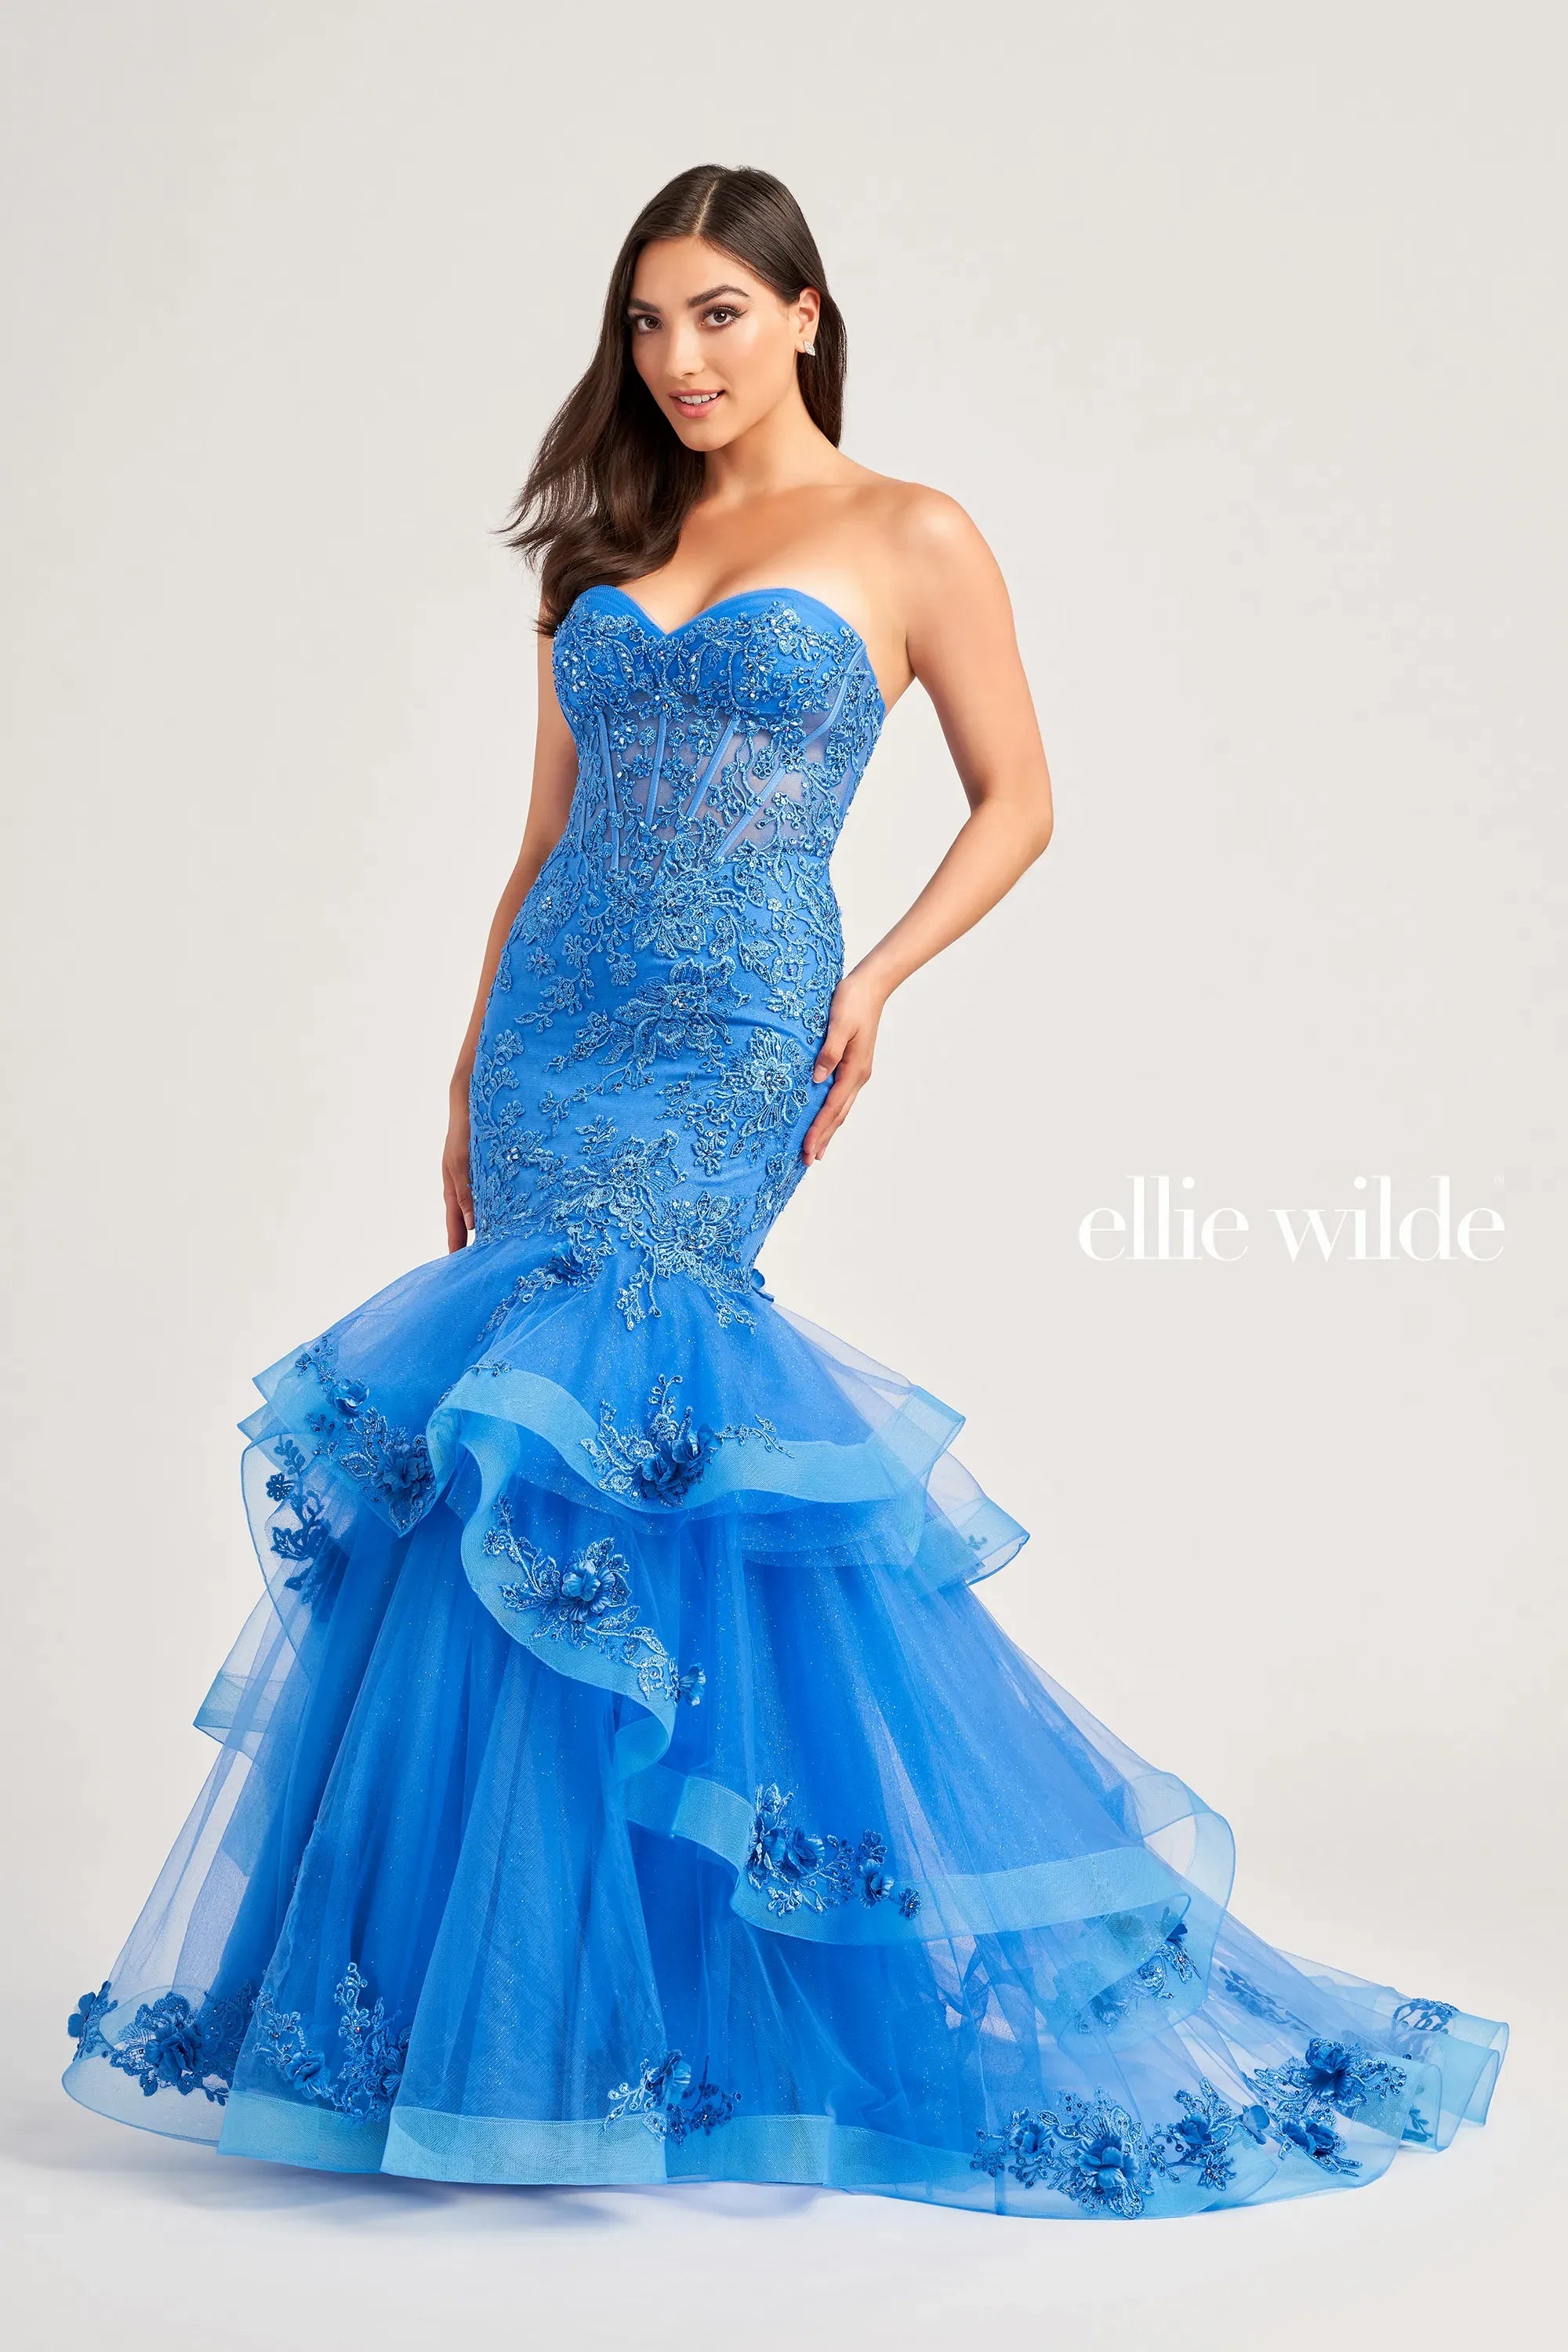 Light Up Blue Dress Princess Halloween costume Blue Glitter Dress | eBay